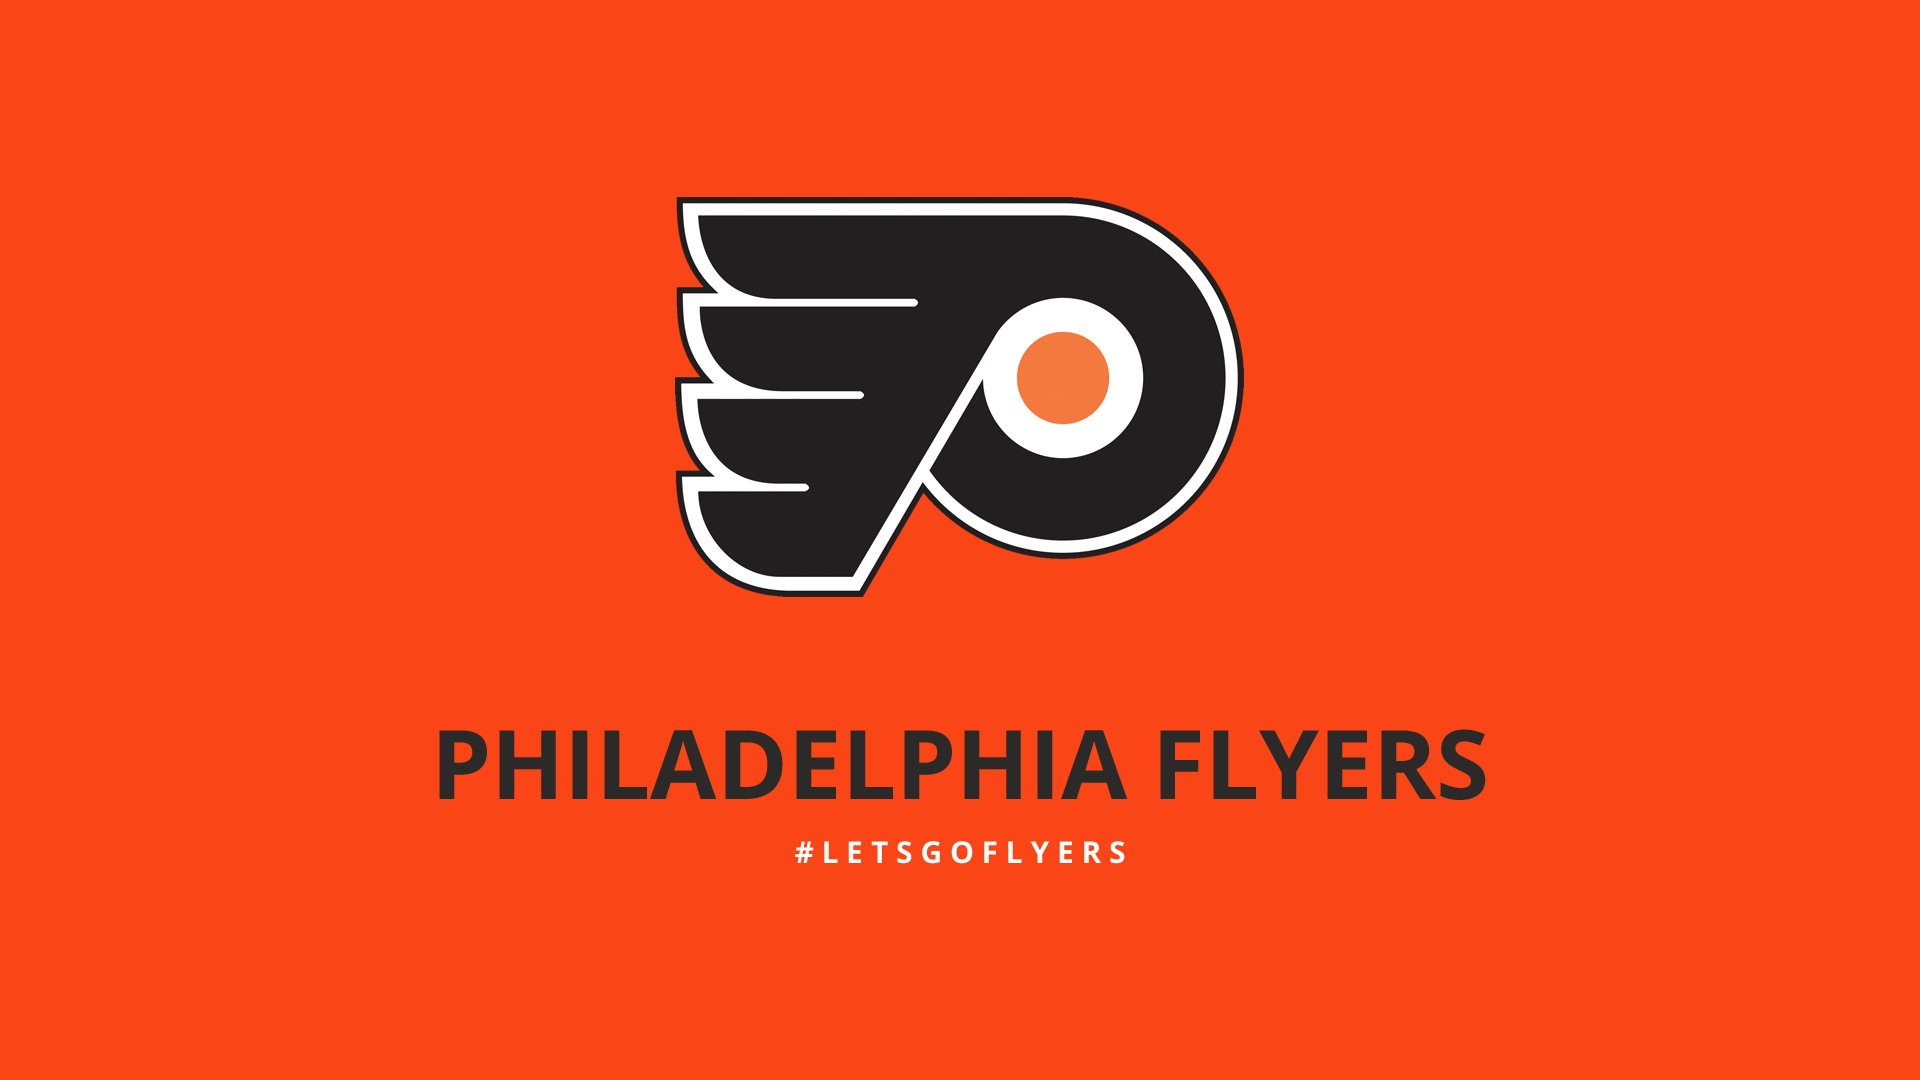 HD NHL Philadelphia Flyer Logo Desktop Wallpaper Full Size ...